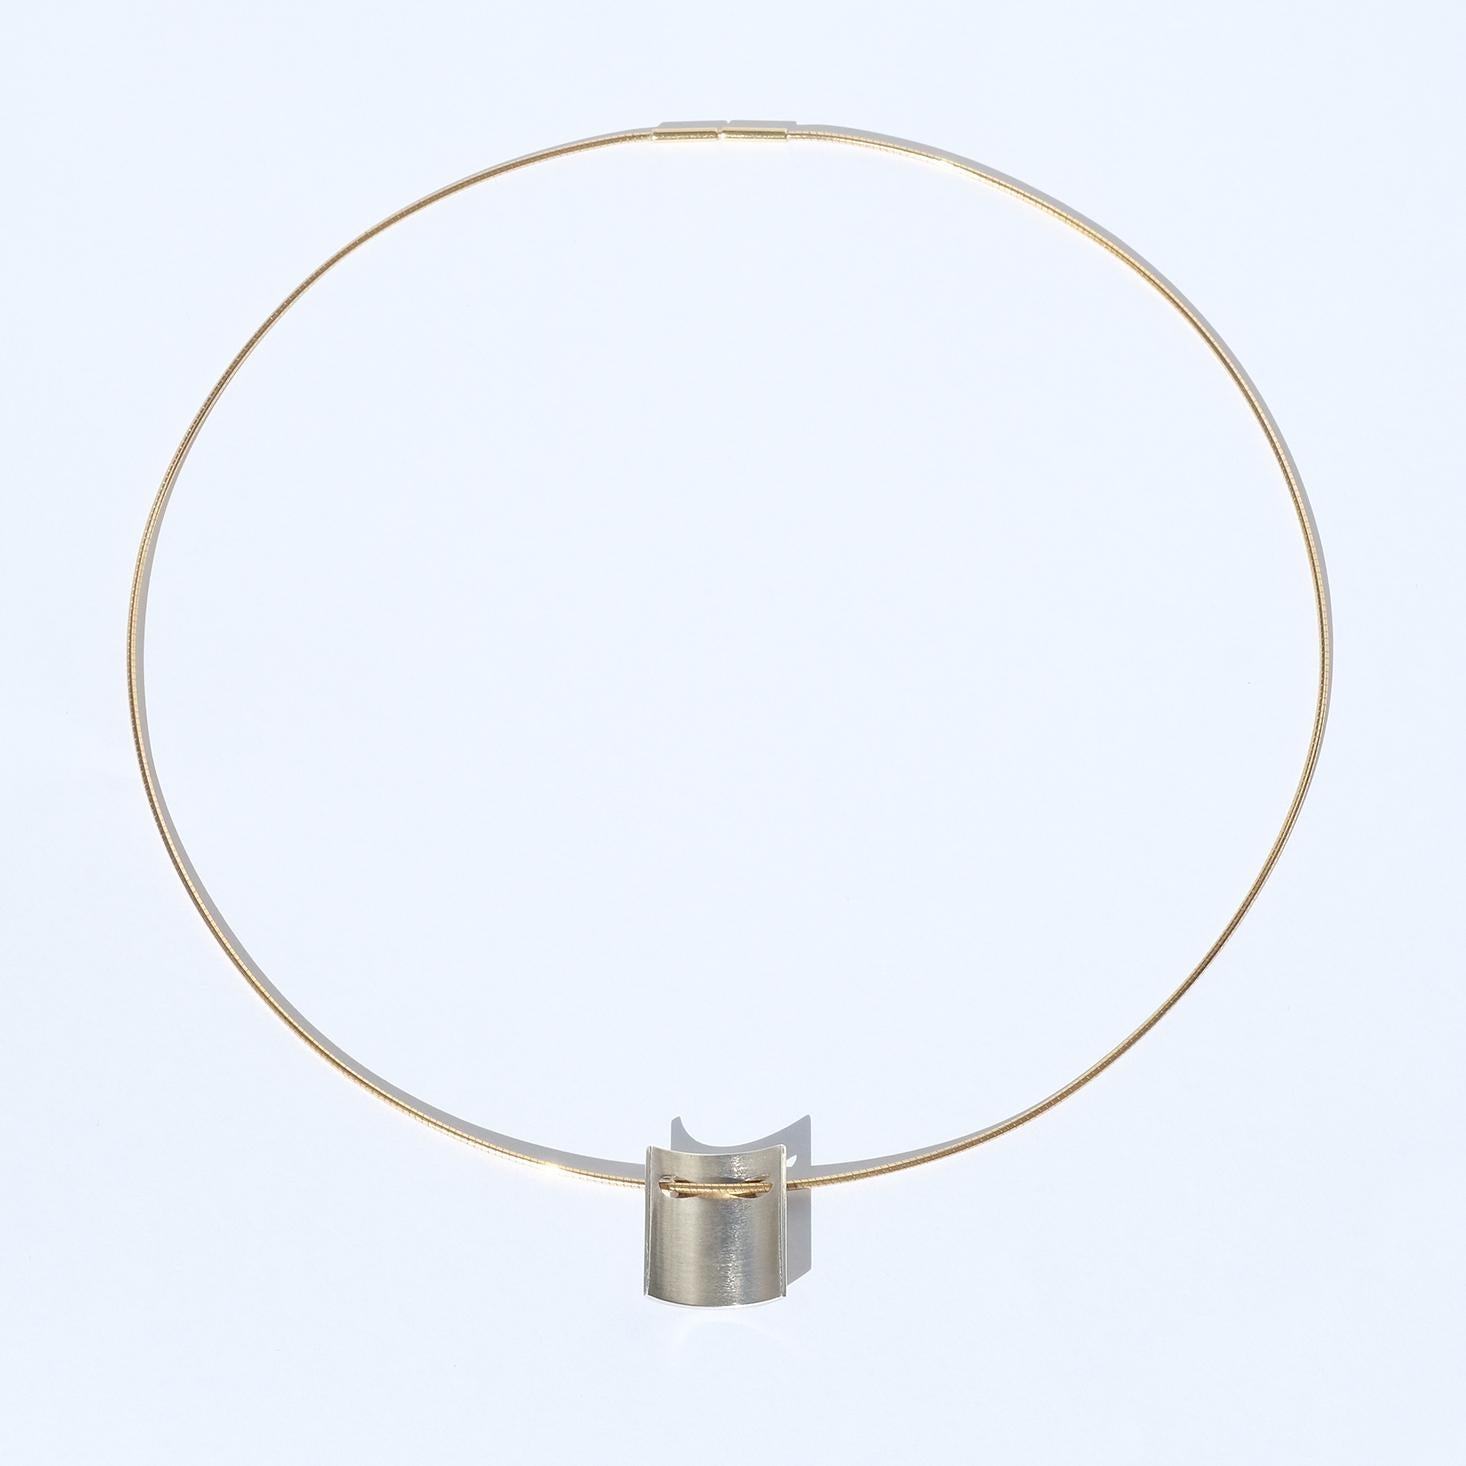 Diese Halskette besteht aus einer Mischung aus mattem Sterlingsilber und glänzendem 14-karätigem Gold. Das Design lässt sich als zeitlos und elegant einfach beschreiben. Die Halskette eignet sich sowohl für Dinnerpartys als auch für den täglichen